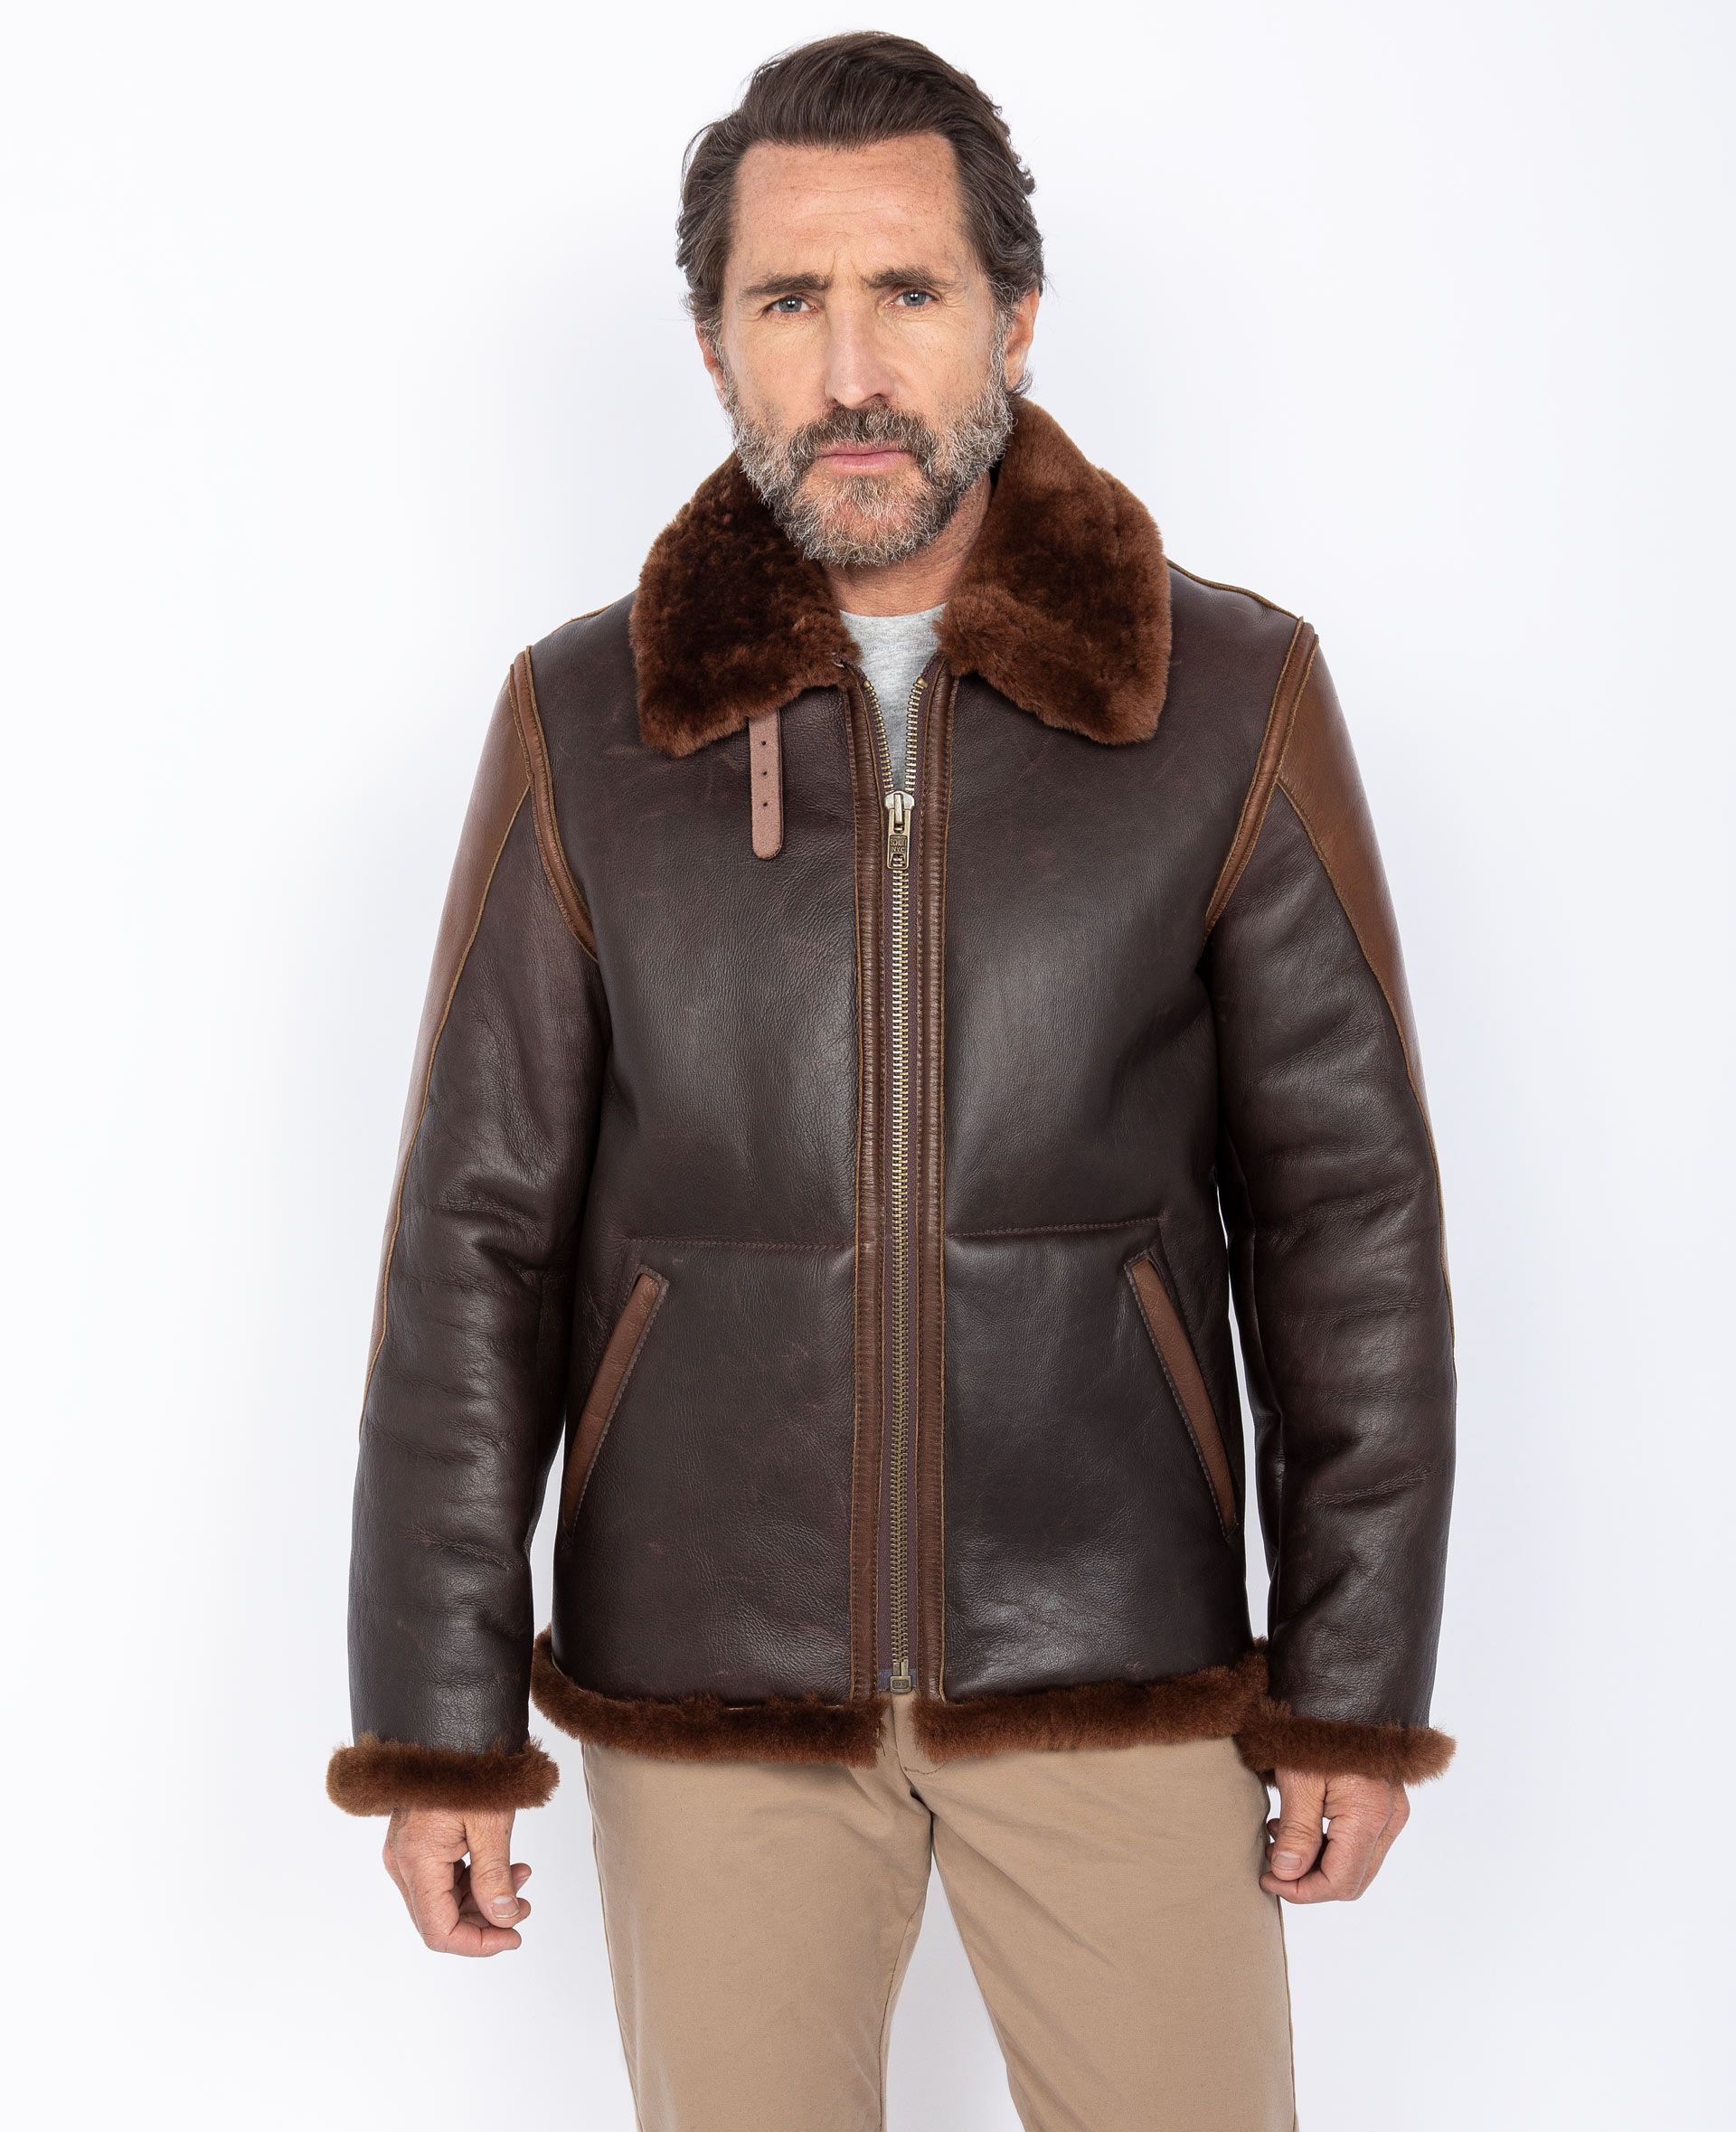 Buy B-3 bomber jacket mythical USA, sheepskin leather man 100